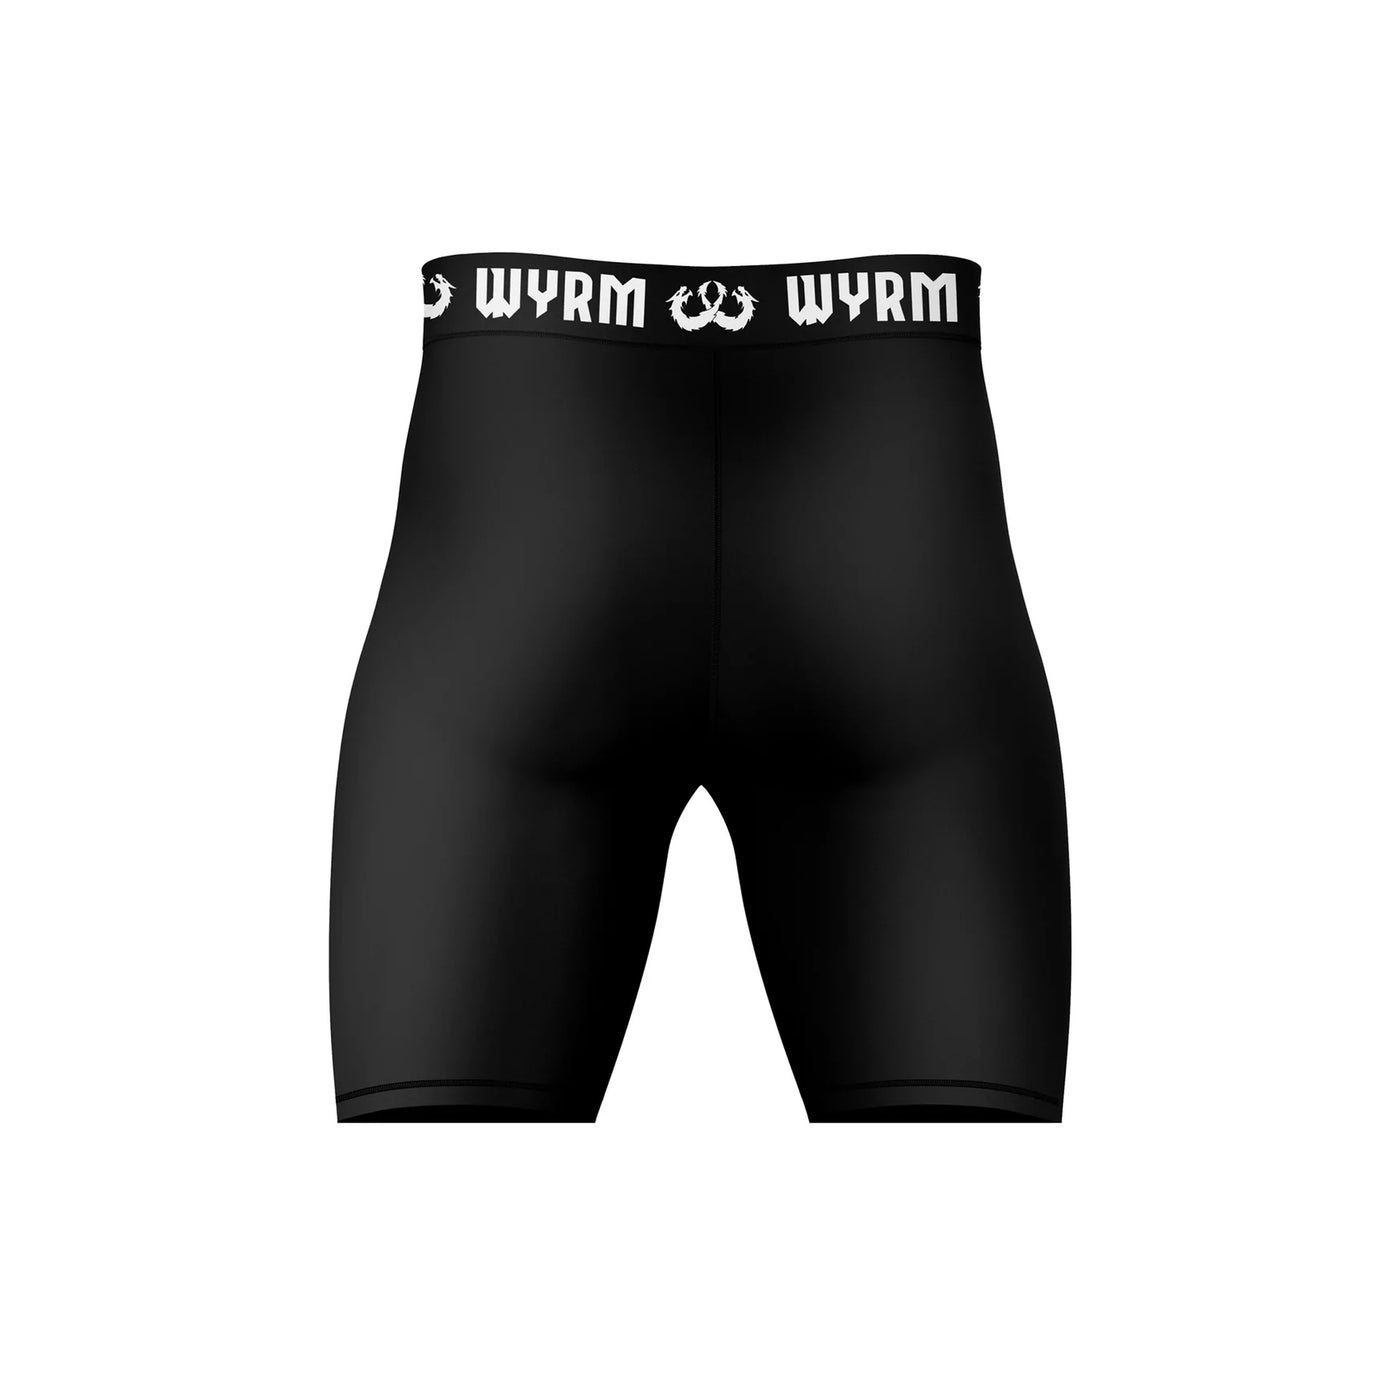 WYRM Basic Black Compression Shorts